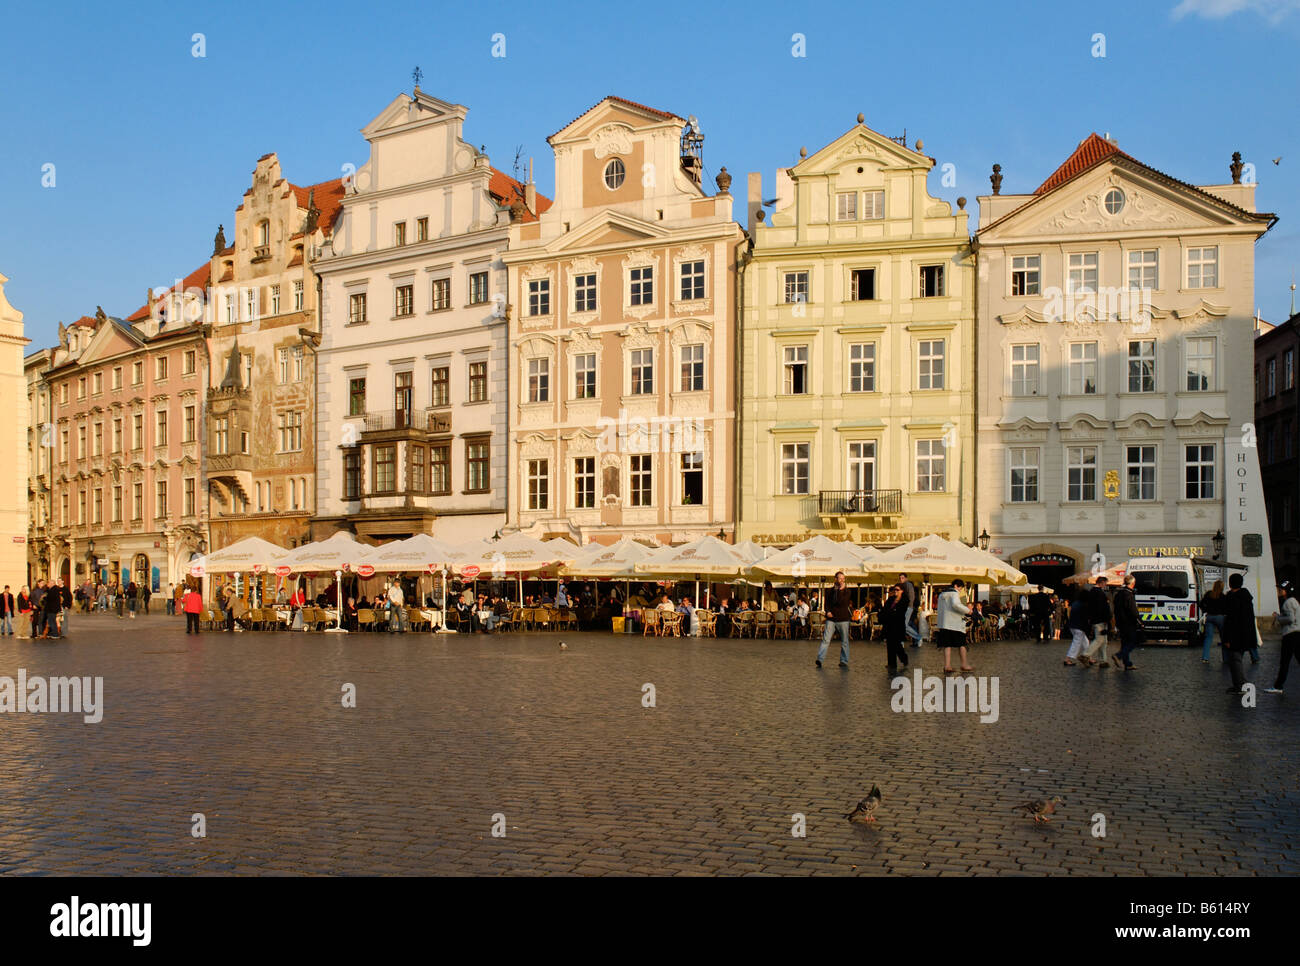 Historischen Altstädter Ring, Prag, UNESCO World Heritage Site, Tschechische Republik, Europa Stockfoto